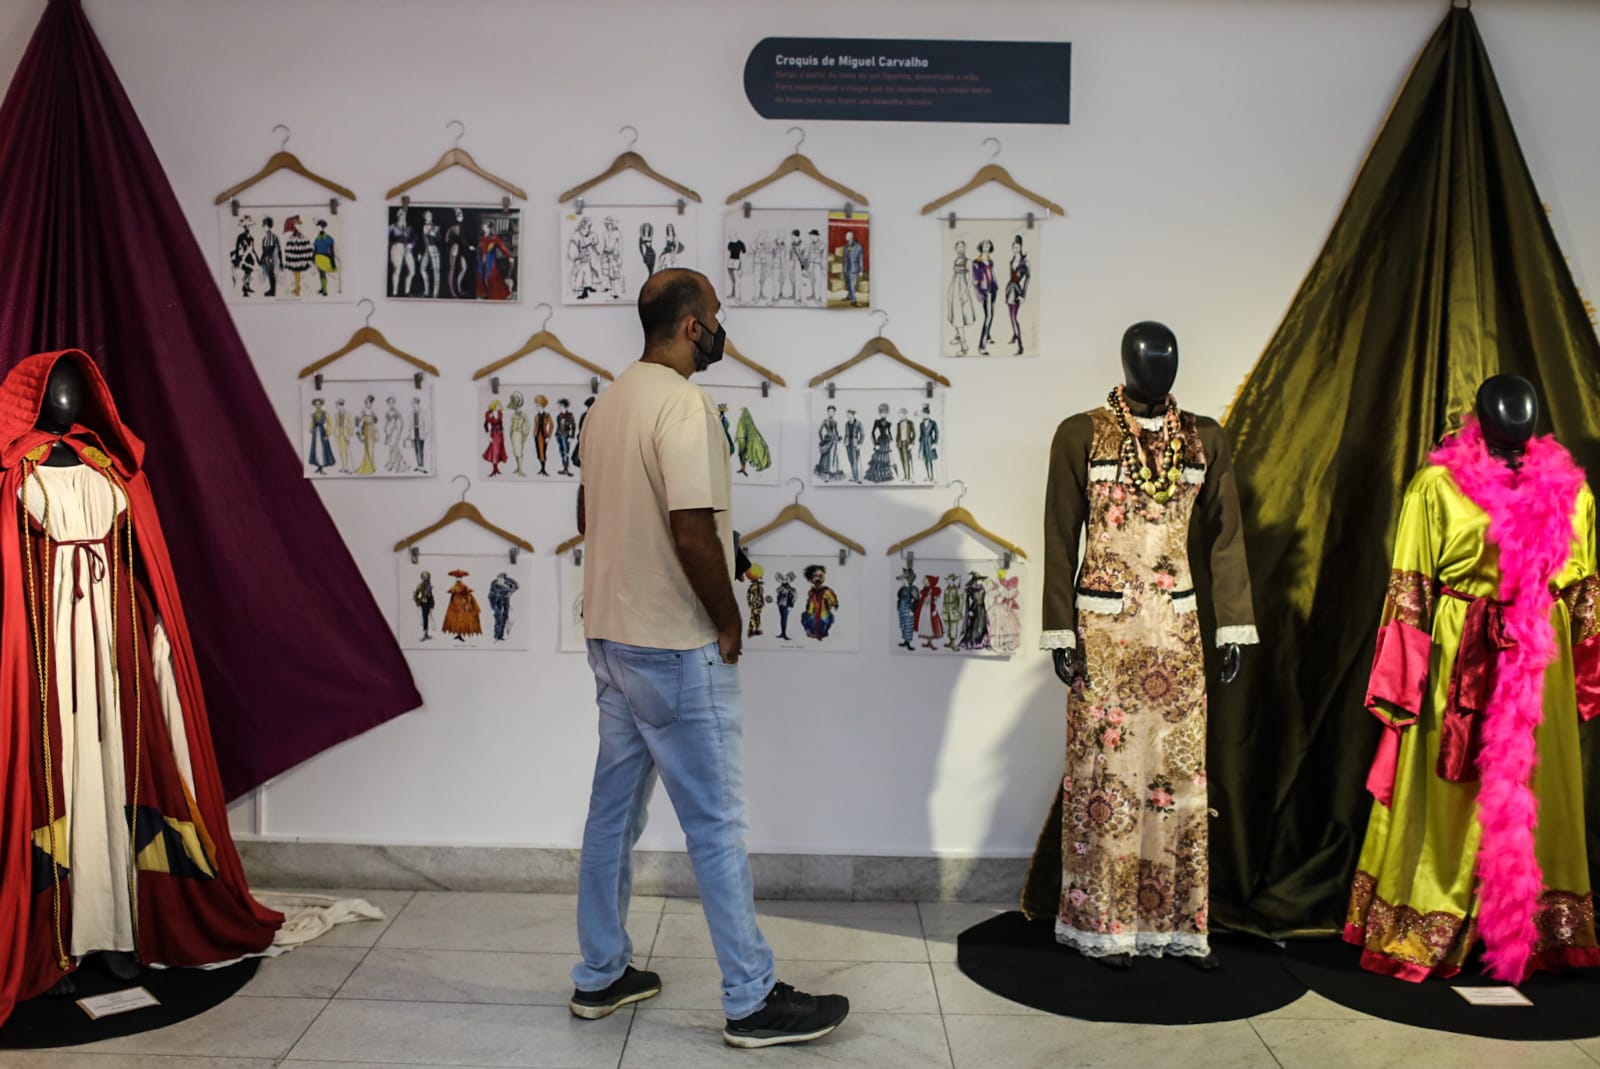 Maria Marighella promove exposição Figurinos de Miguel Carvalho no Centro Cultural da Câmara de Salvador